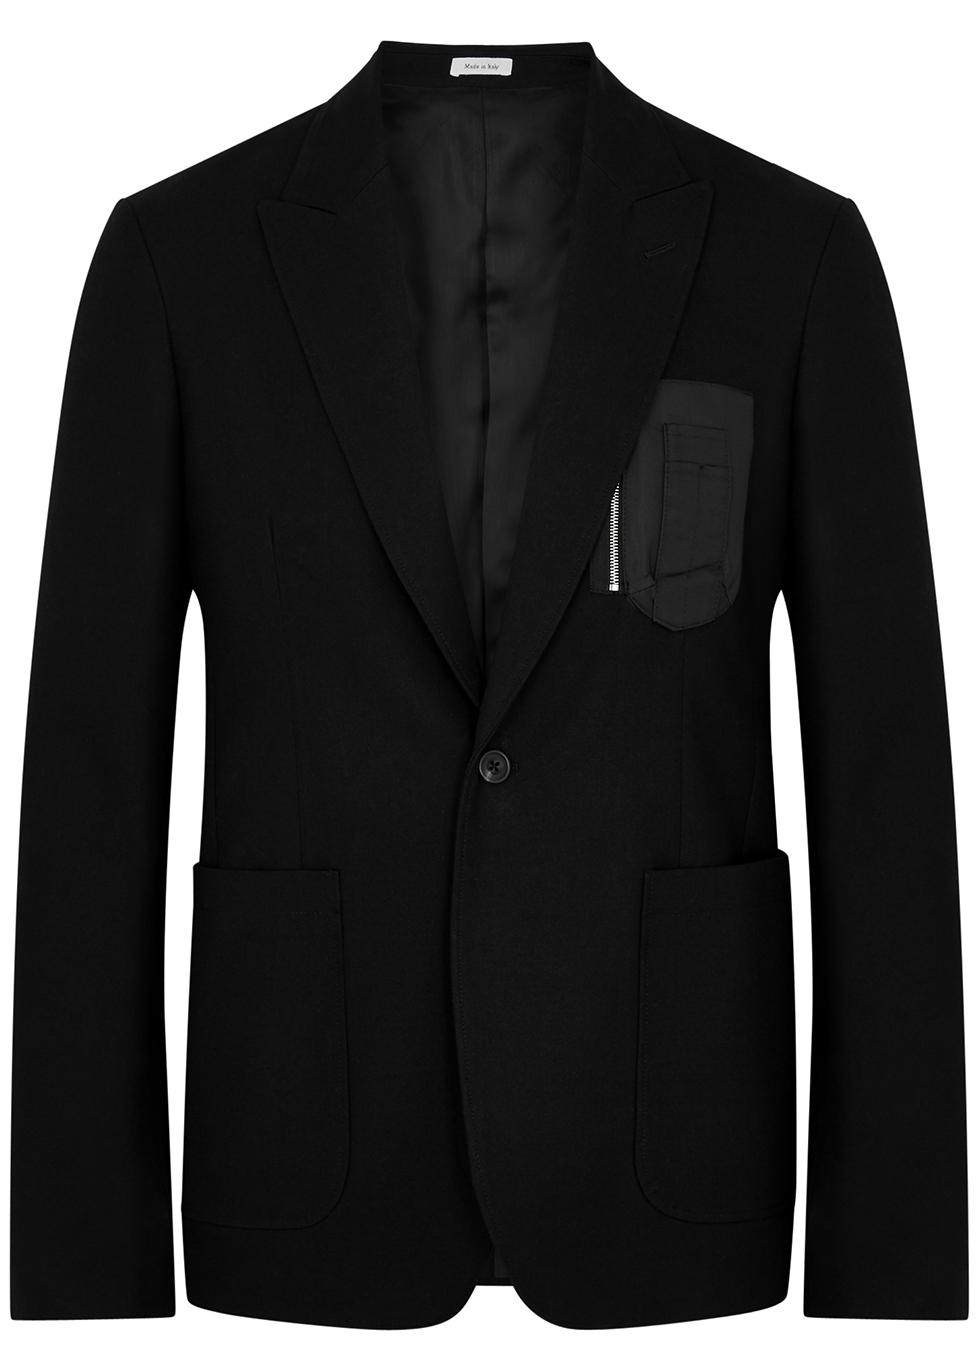 MA-1 black cotton-twill blazer by ALEXANDER MCQUEEN